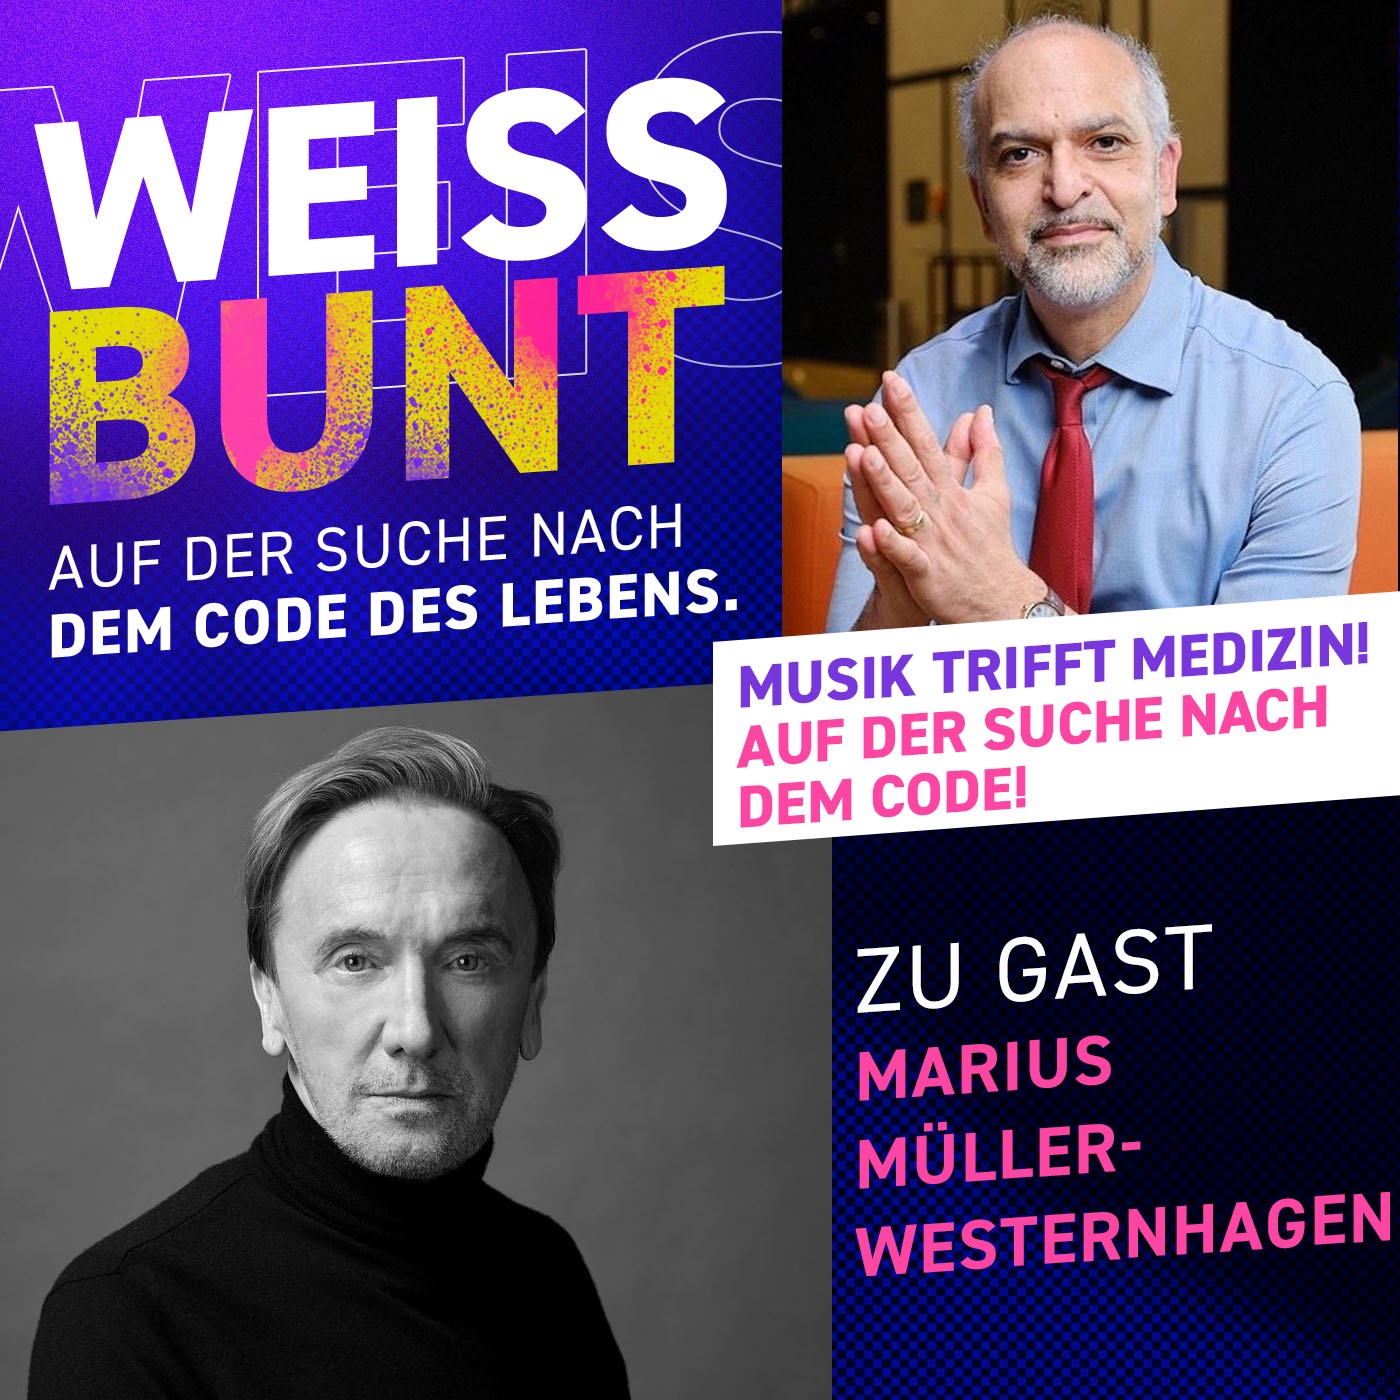 Marius Müller-Westernhagen zu Gast! Musik trifft Medizin!